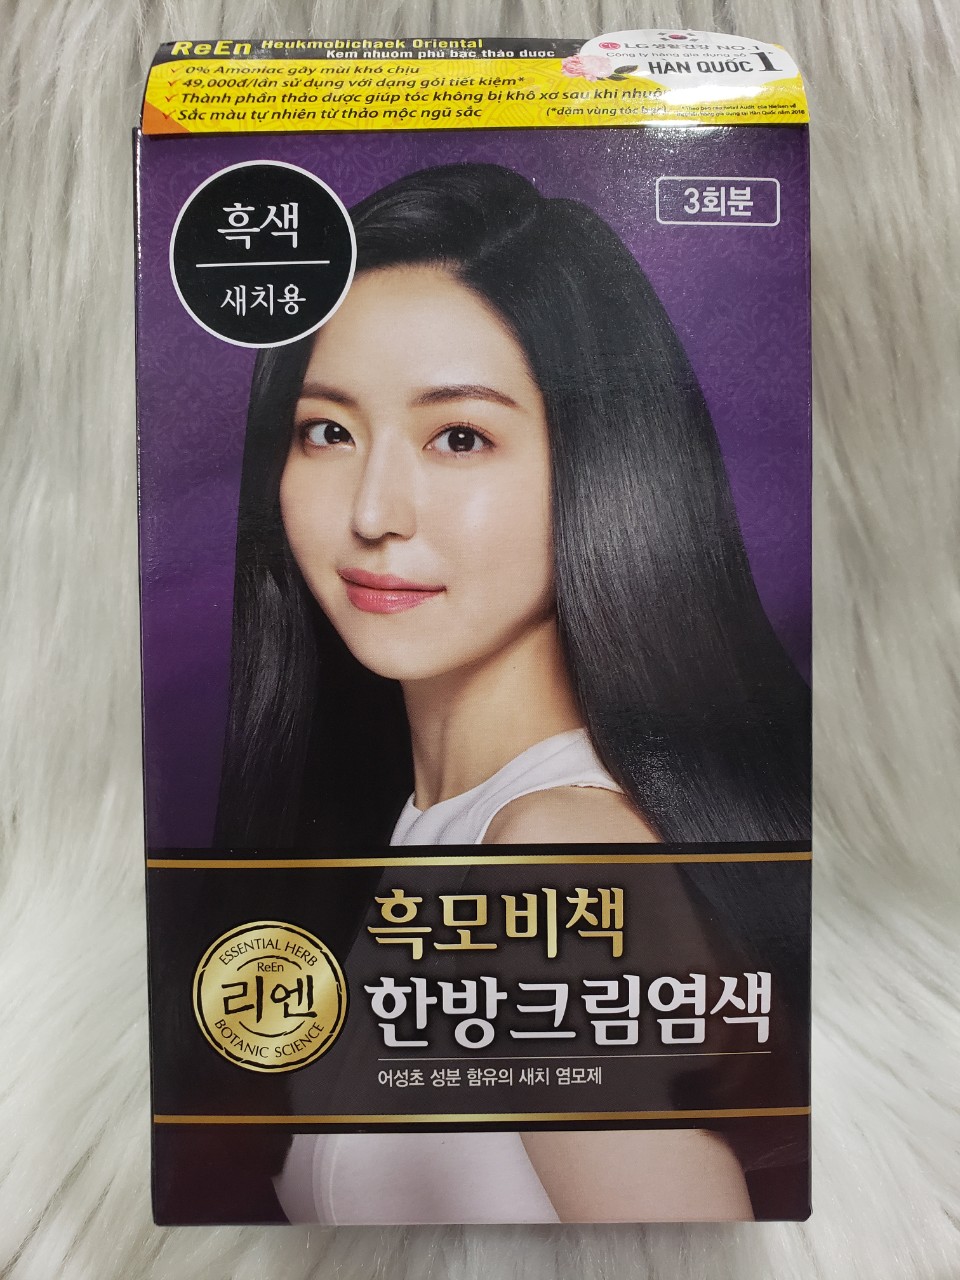 Nếu bạn đang gặp vấn đề với mái tóc bạc phải, sản phẩm phủ bạc thảo dược REEN màu đen Hàn Quốc sẽ giúp bạn giải quyết vấn đề đó. Không chỉ phủ bạc hiệu quả, sản phẩm còn giúp chăm sóc và nuôi dưỡng tóc từ bên trong. Hãy xem hình ảnh về phủ bạc thảo dược REEN màu đen Hàn Quốc để khám phá các công dụng tuyệt vời của sản phẩm này.